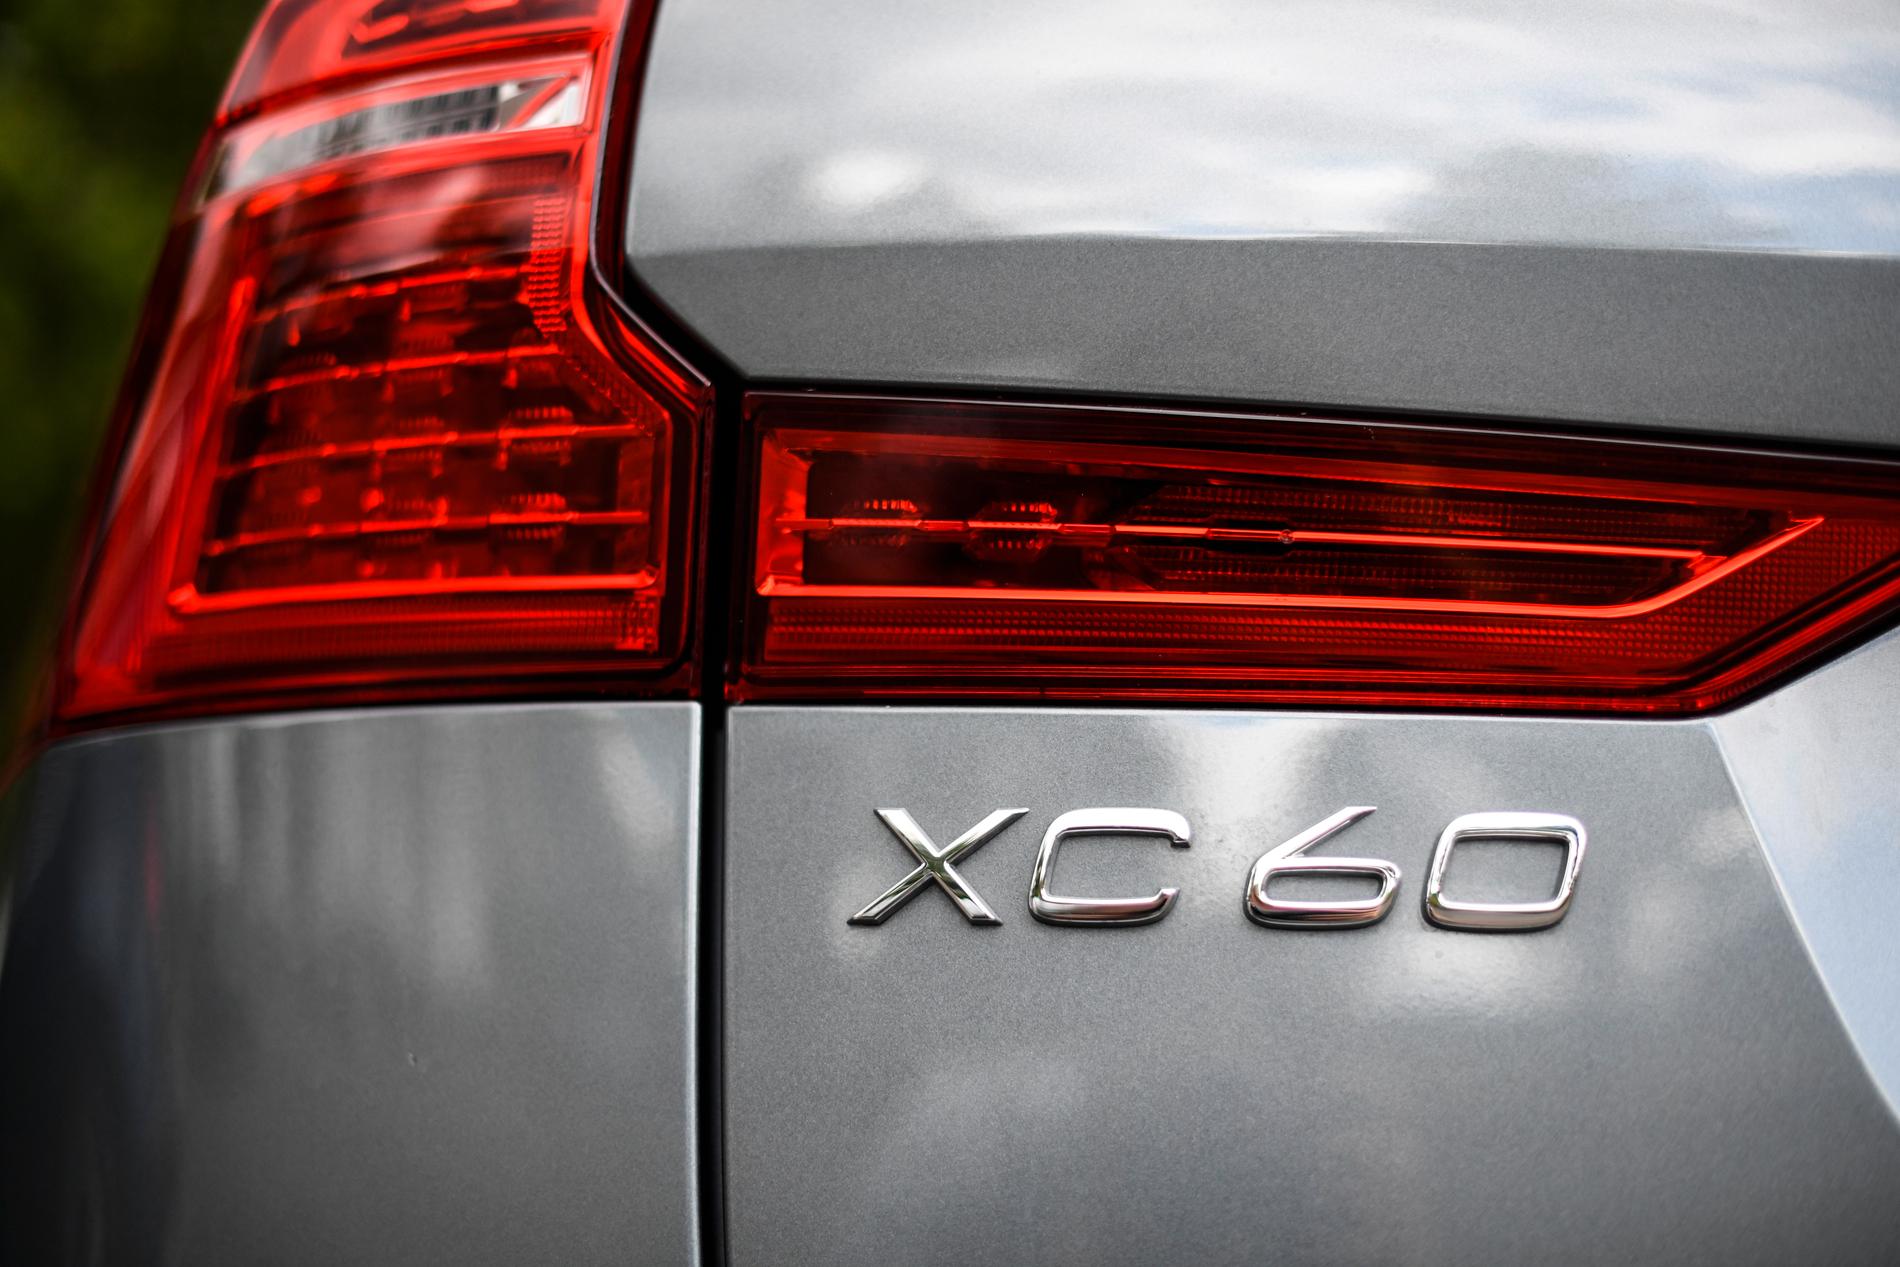 Volvomodellen XC60 anklagas för olaglig avgashantering. Arkivbild.